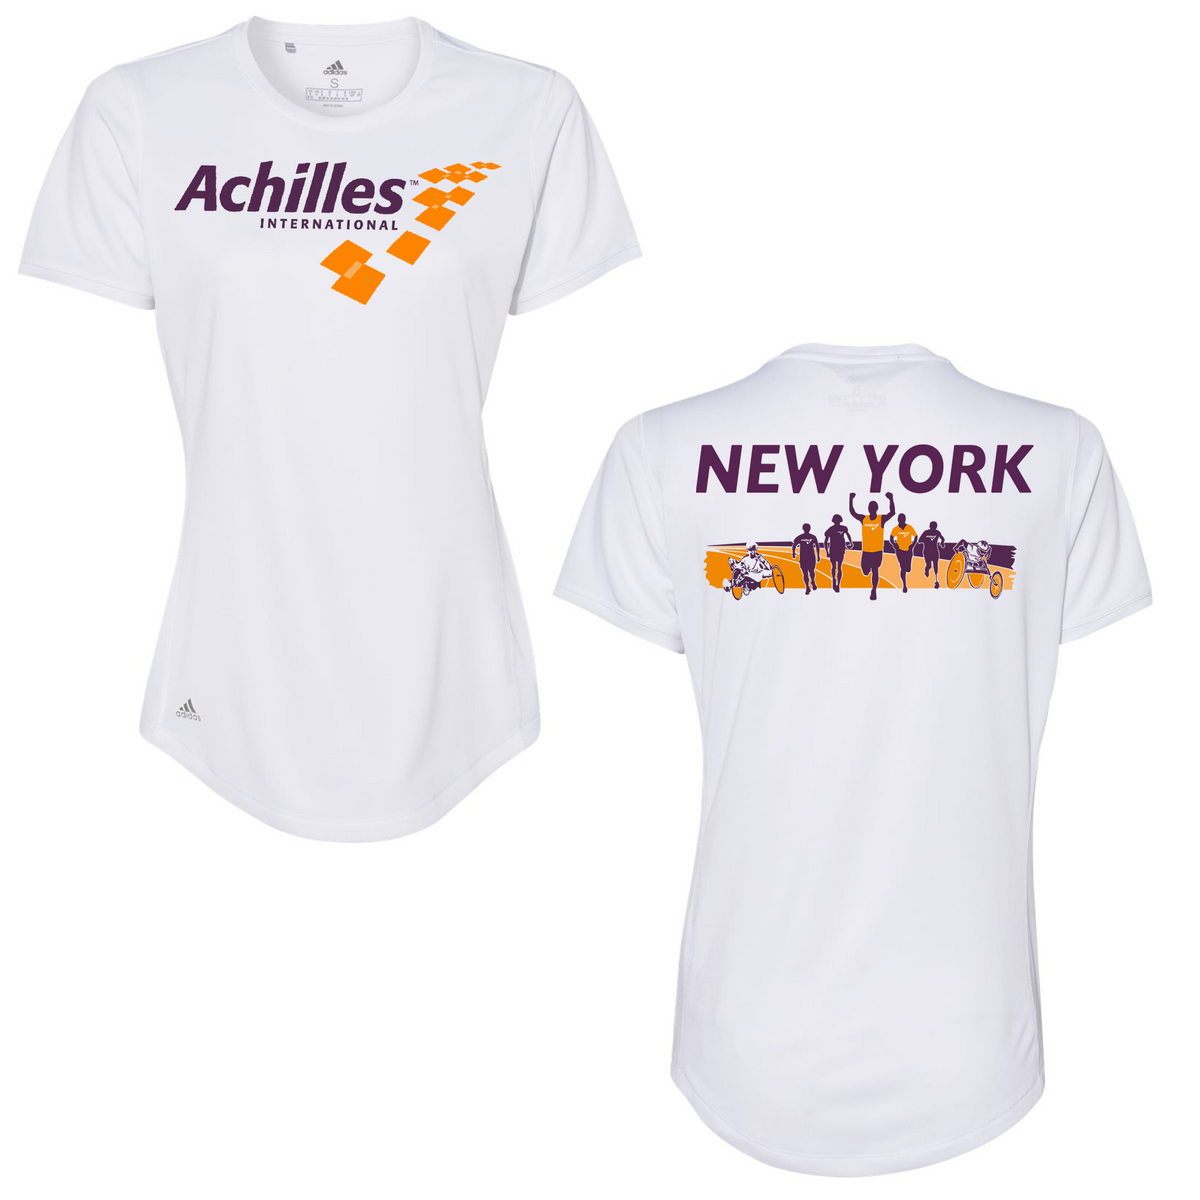 Achilles International Women's Adidas Sport T-Shirt